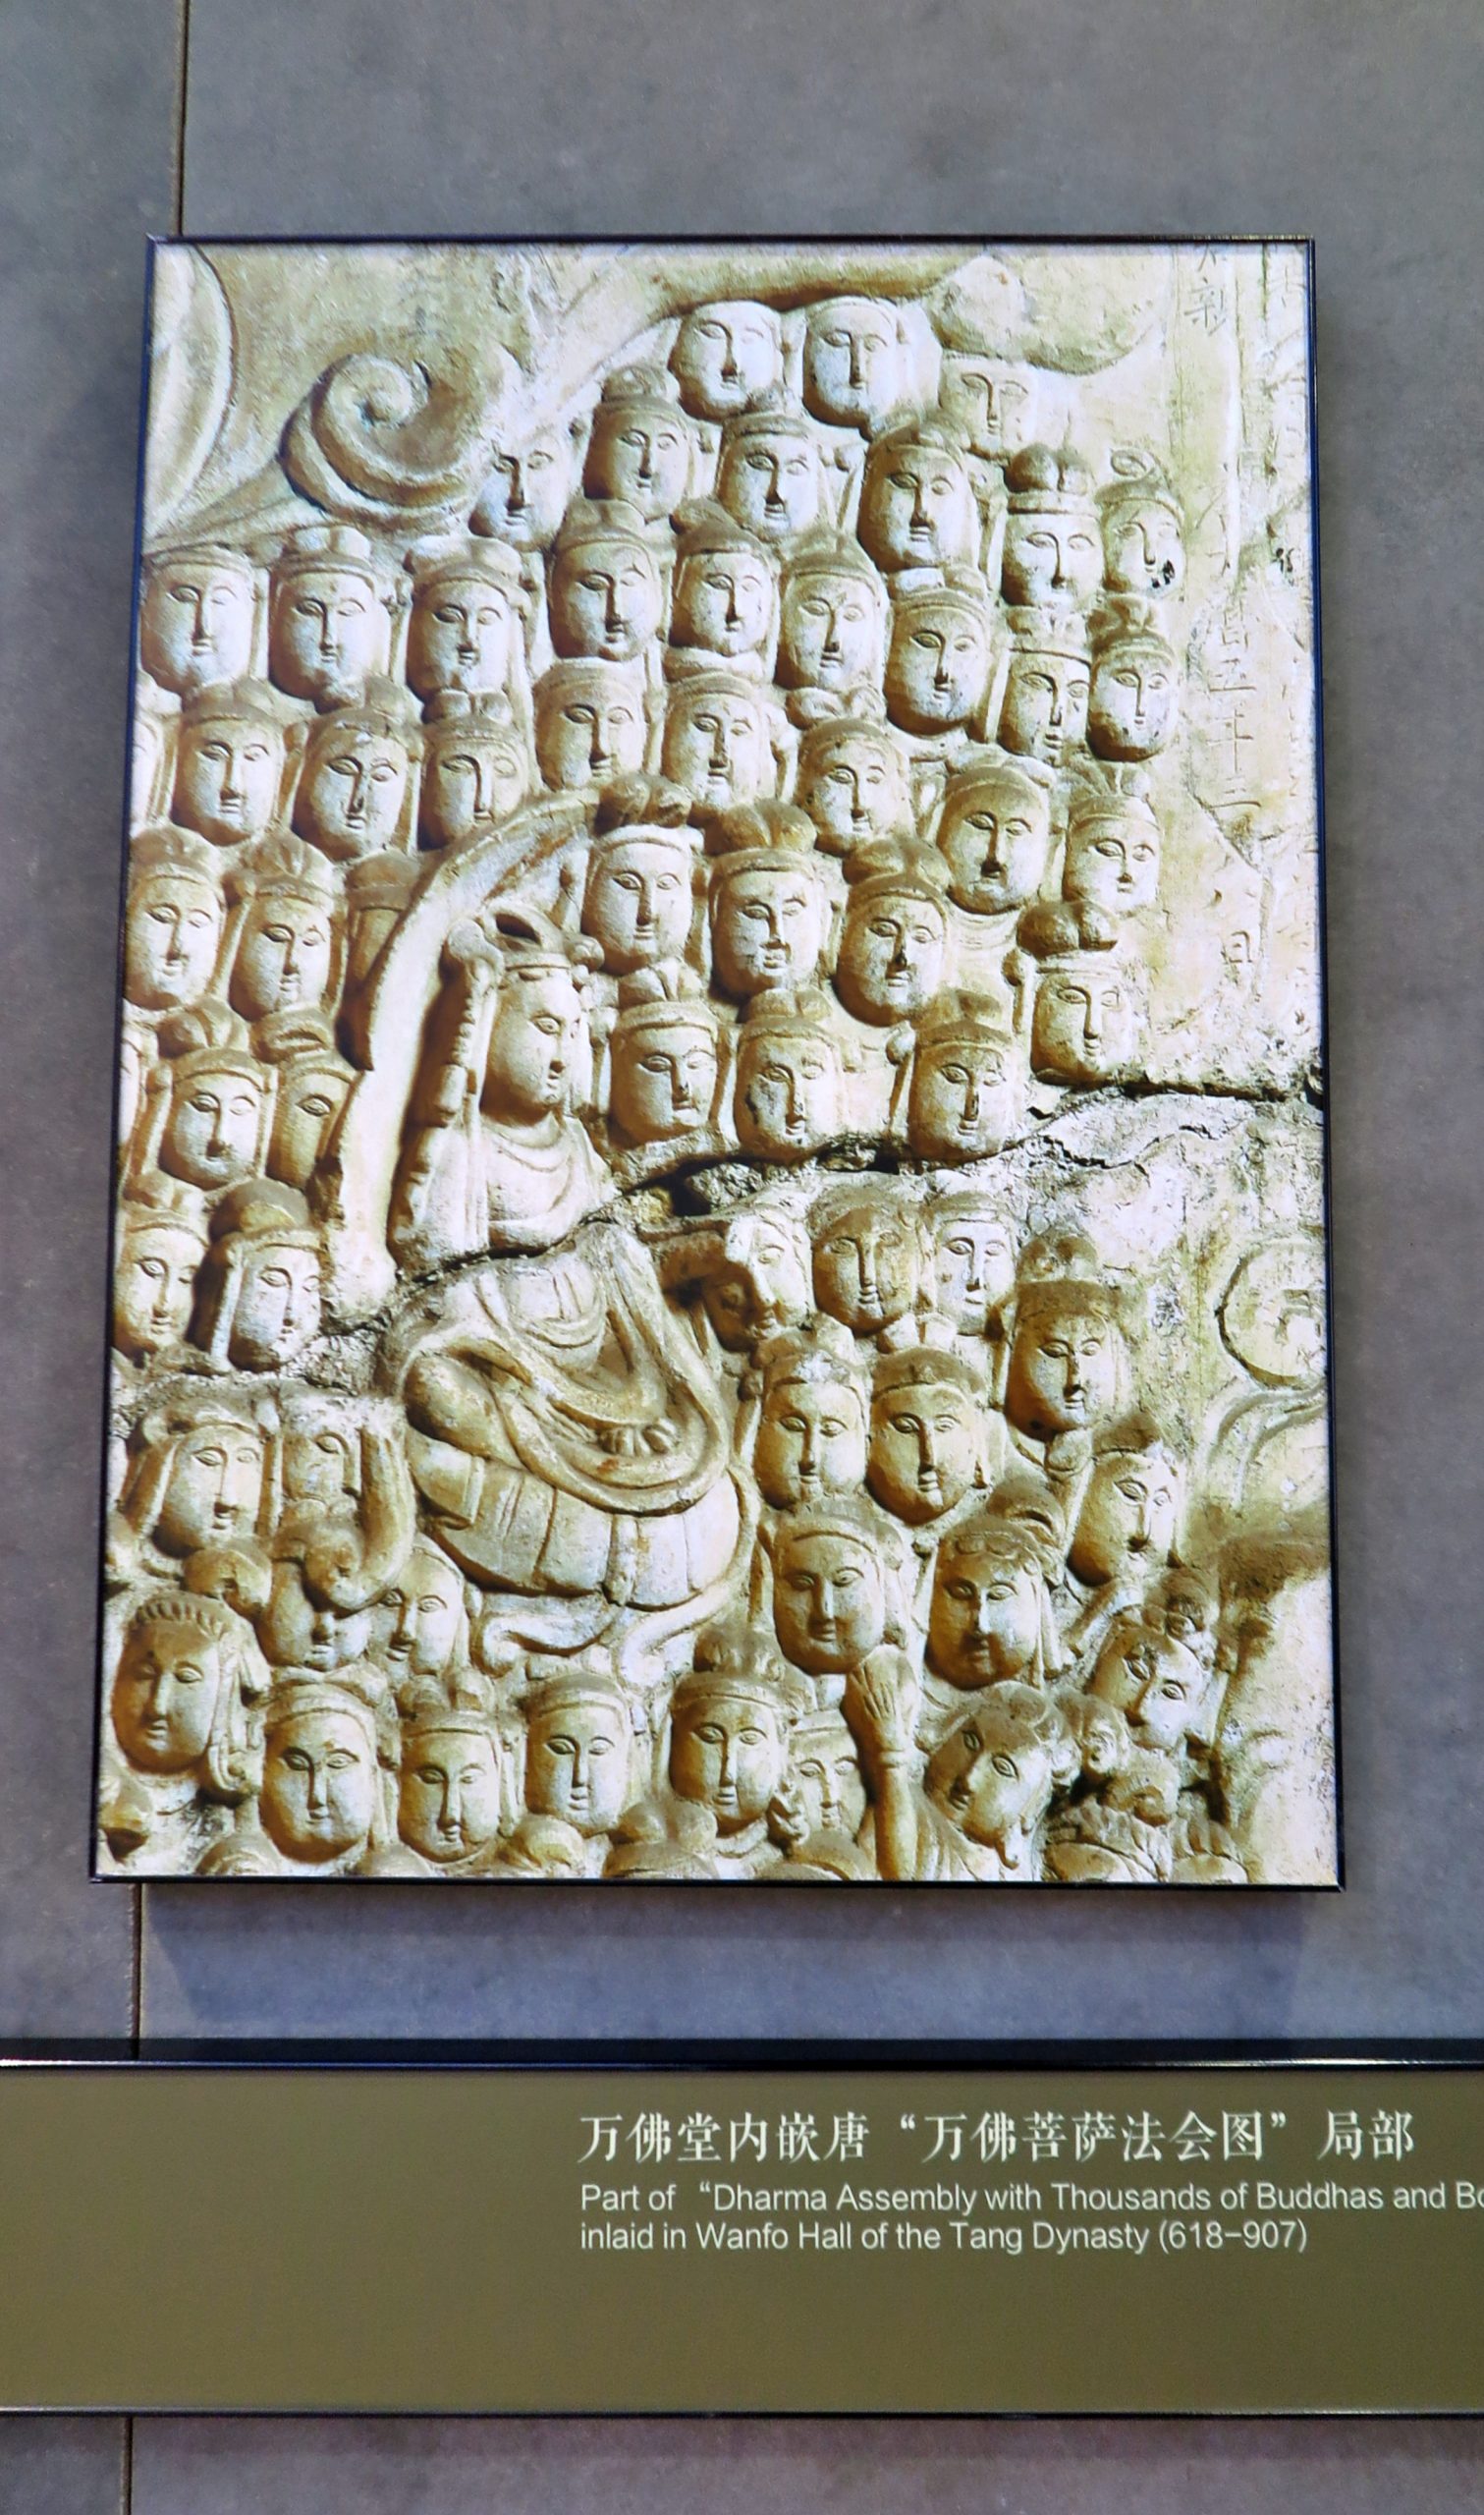 万佛堂内嵌唐“万佛菩萨法会图”局部 Part of "Dharma Assembly with Thousands of Buddhas and Bo inlaid in Wanfo Hall of the Tang Dynasty (618-907)